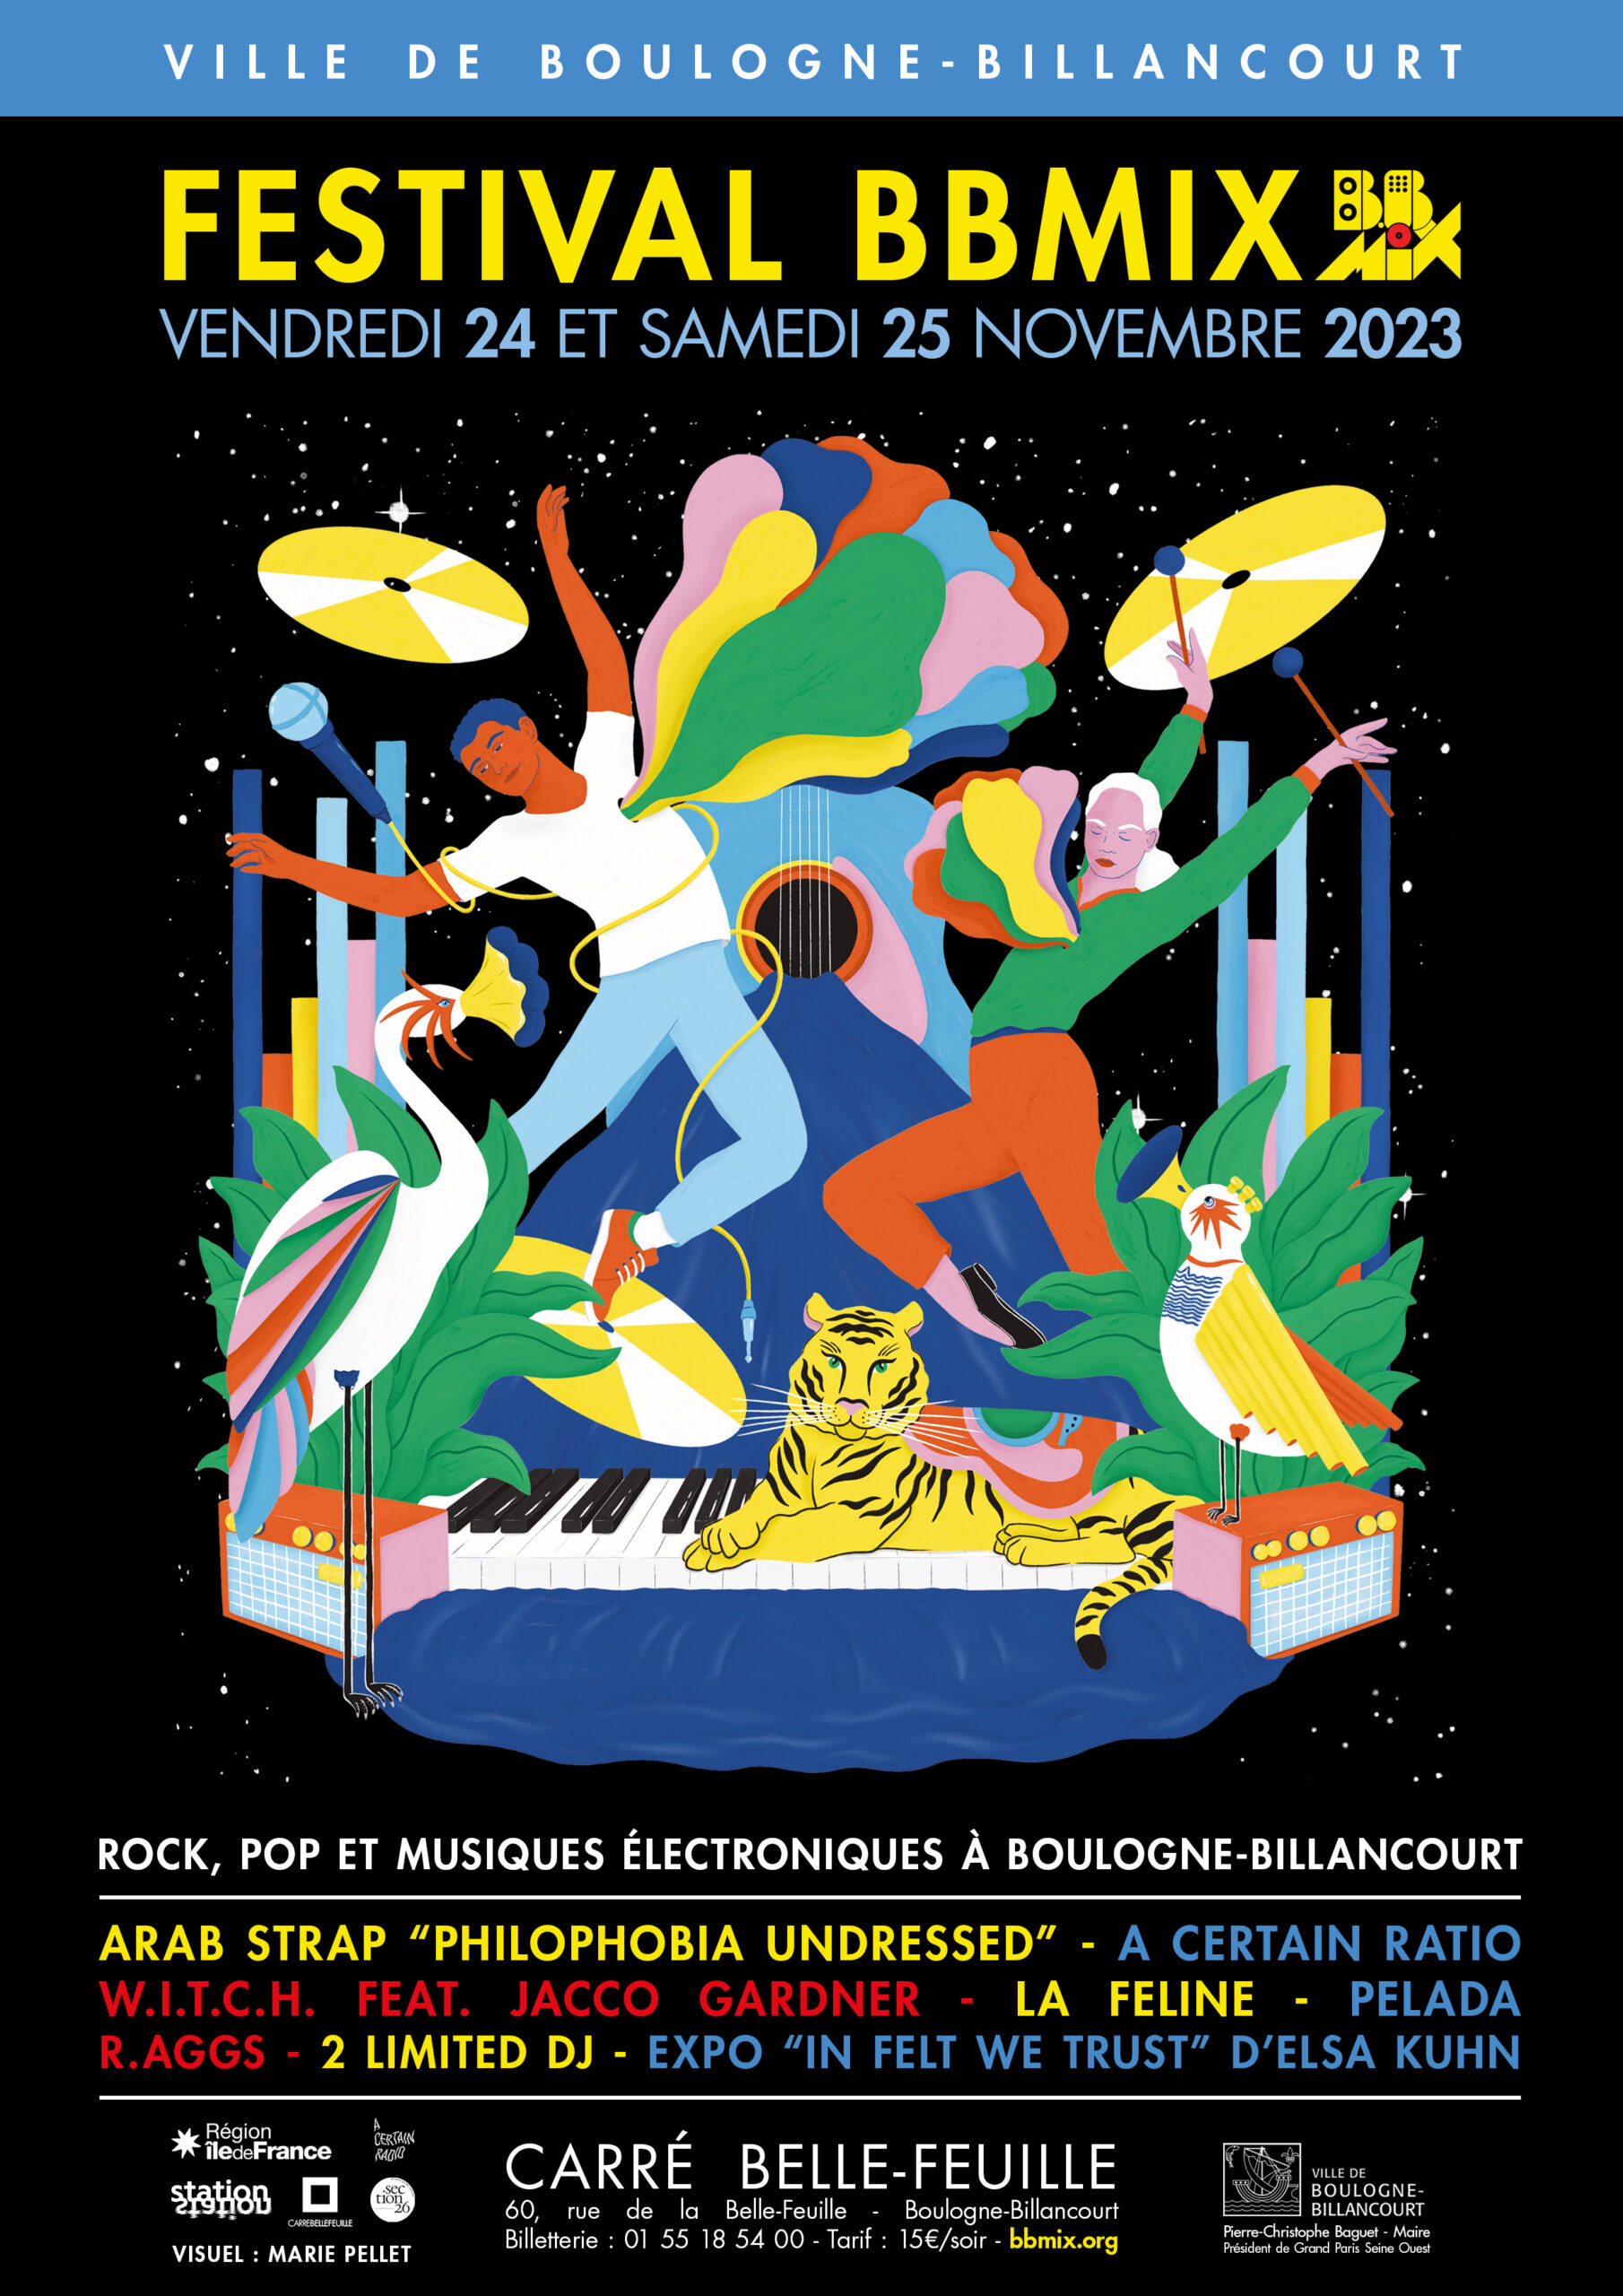 Marie Pellet - Illustration - graphic design - portfolio - Festival - 2023 - Musique - BBMIX - Boulogne-Billancourt - affiche